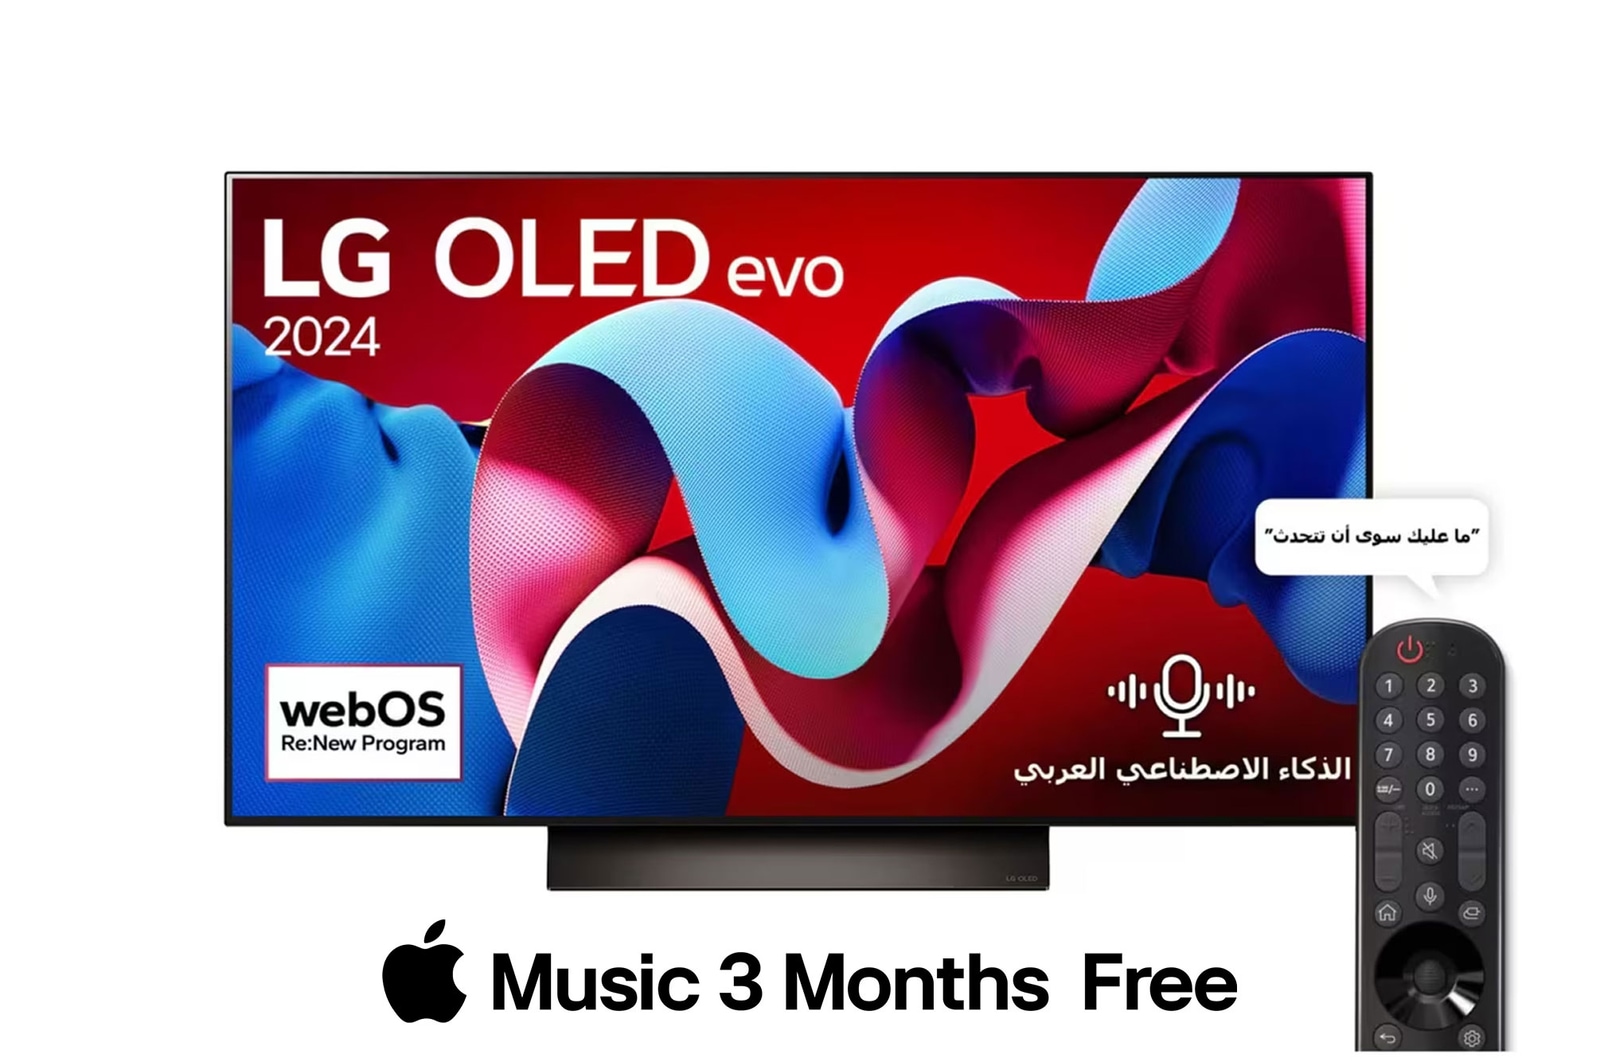 صورة أمامية لتلفزيون LG OLED evo TV وOLED C4 وتلفزيون OLED Emblem رقم 1 على مستوى العالم لمدة 11 عامًا وشعار نظام التشغيل webOS Re:New Program على الشاشة